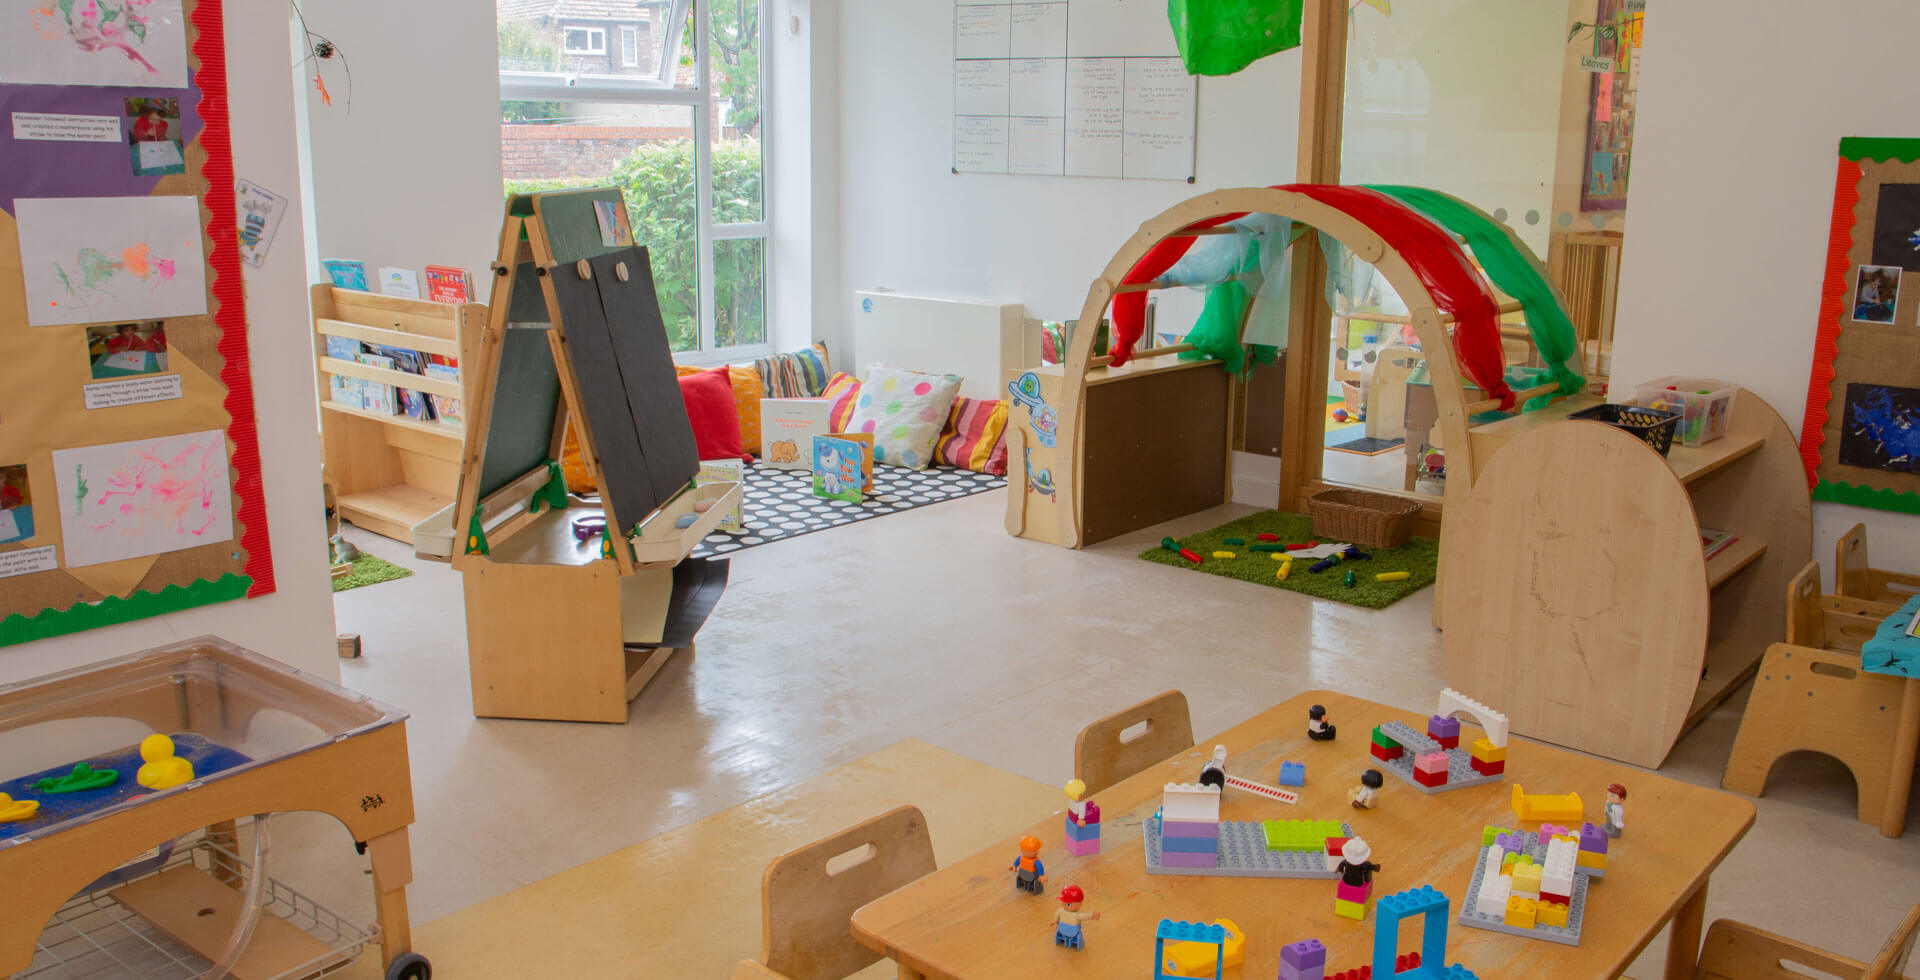 Timperley Day Nursery and Preschool